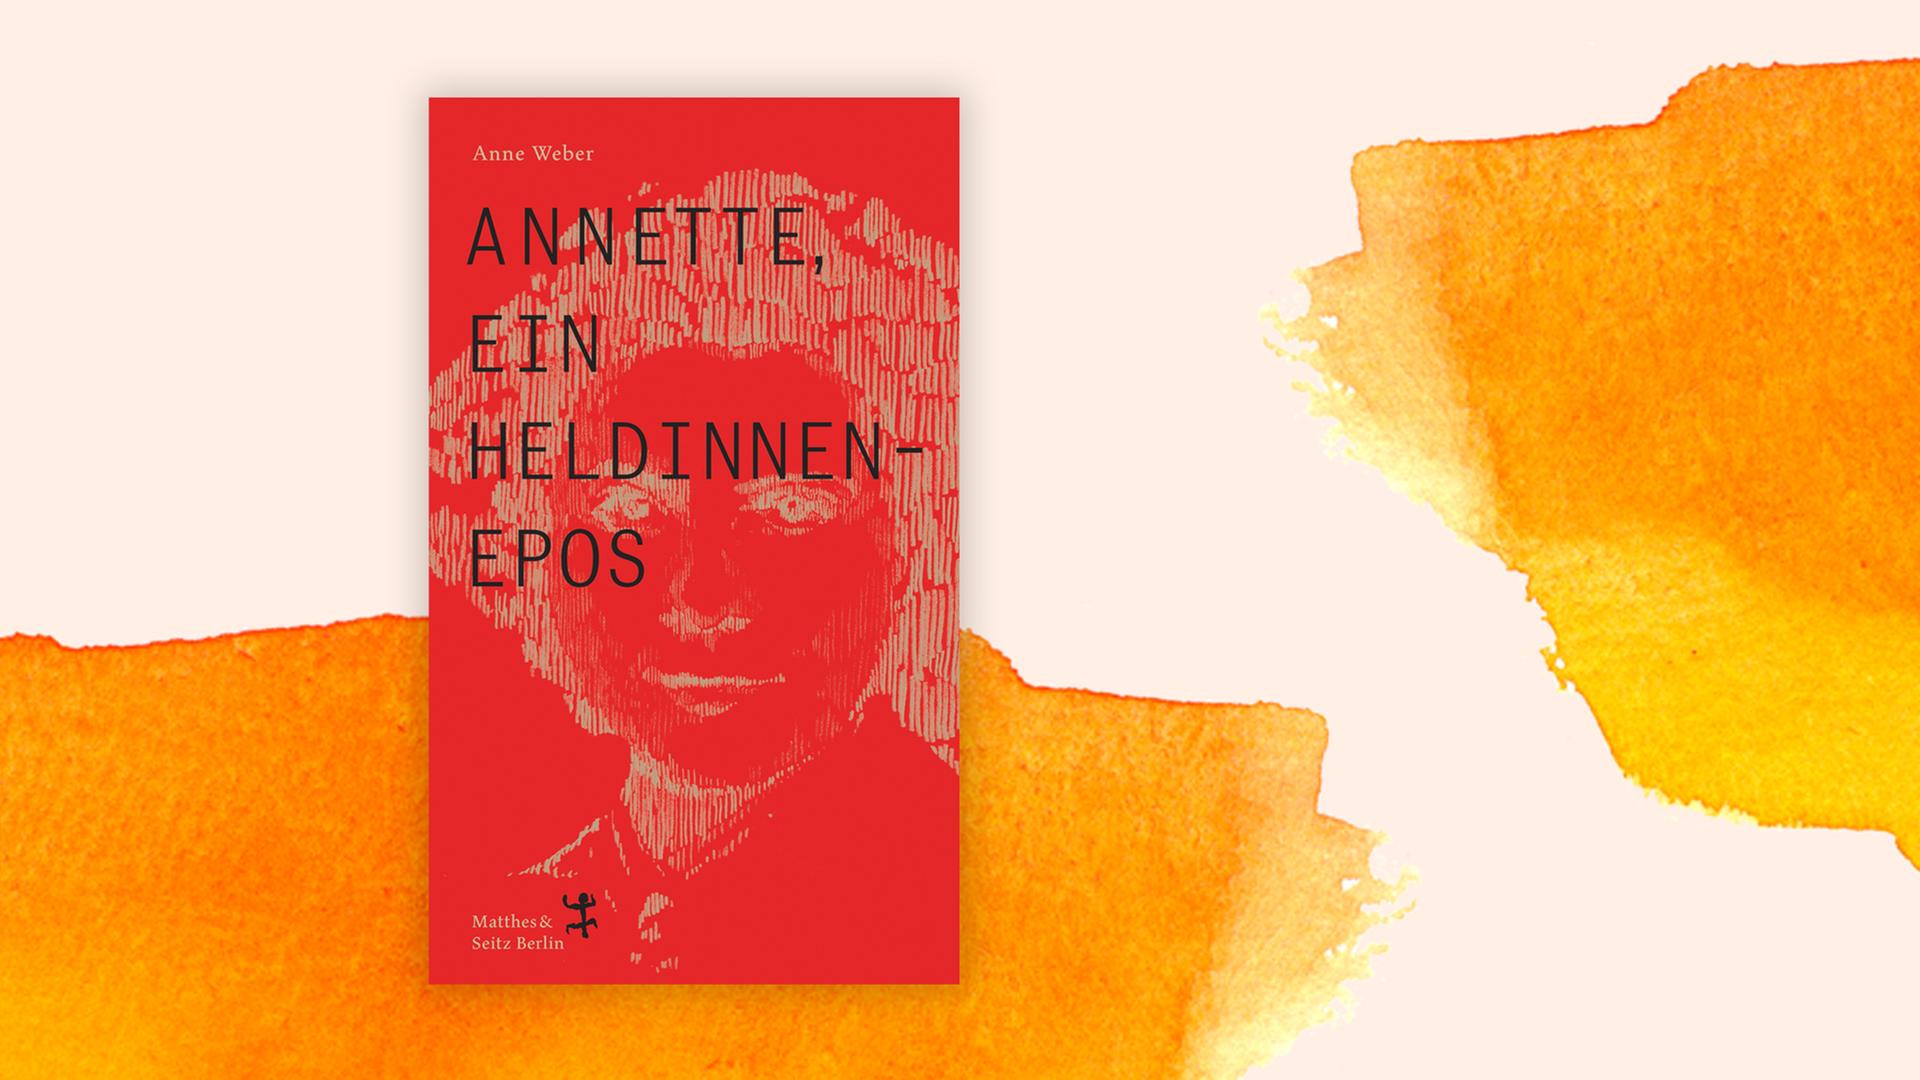 Buchcover "Annette, ein Heldinnenepos" von Anne Weber vor einem grafischen Hintergrund